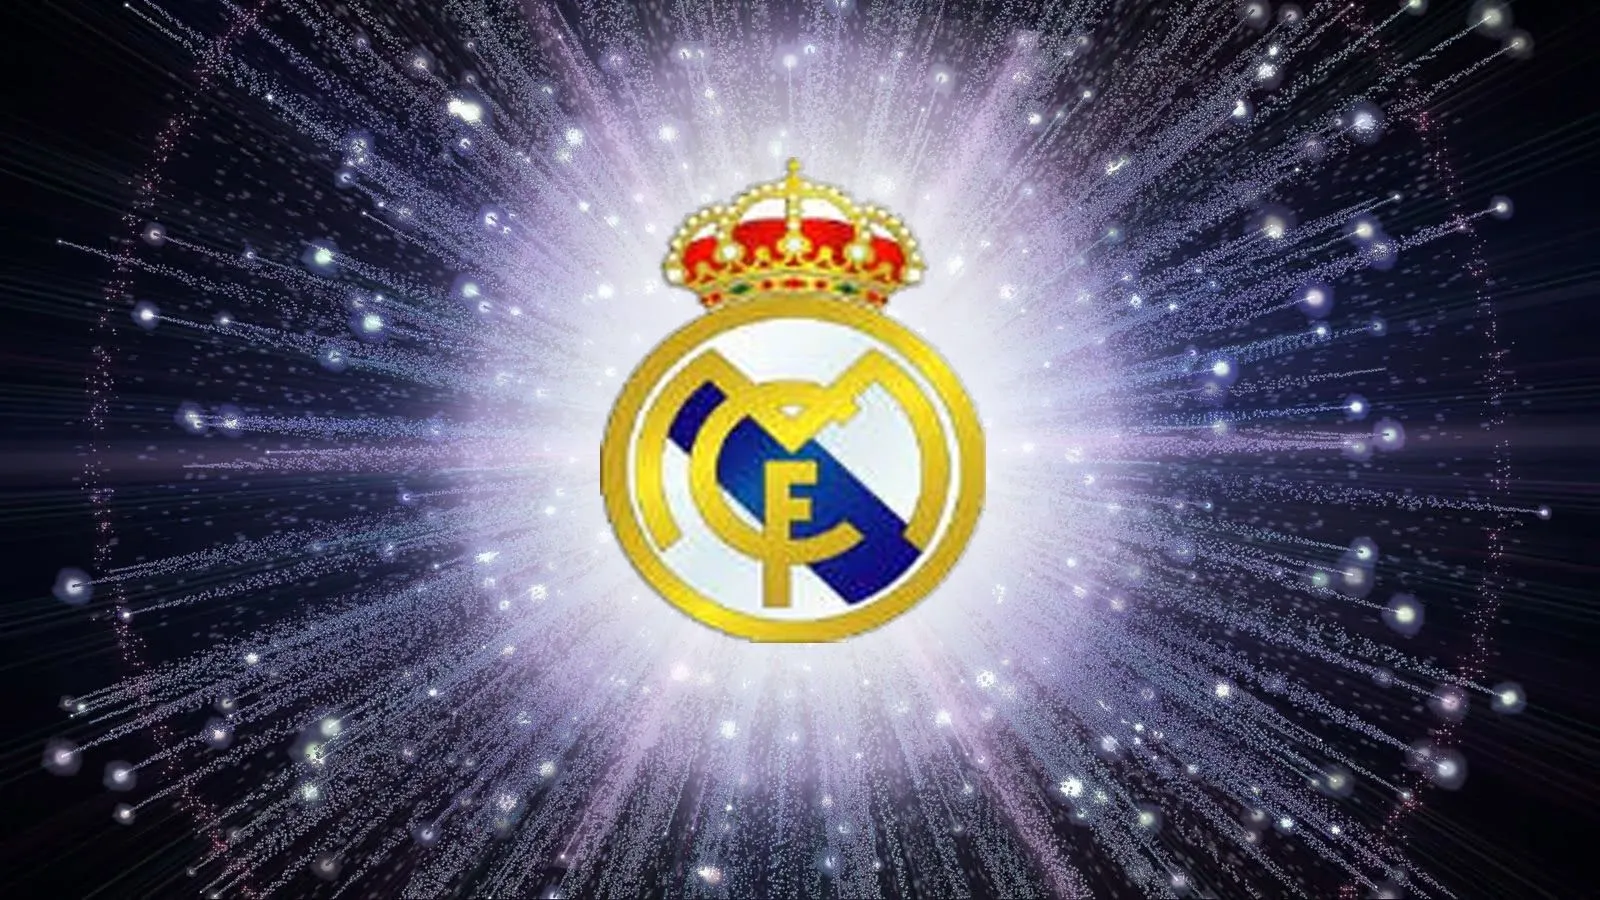 Real Madrid: Imágenes, Tarjetas o Invitaciones para Imprimir Gratis. |  Invitaciones para imprimir gratis, Real madrid, Invitaciones para imprimir